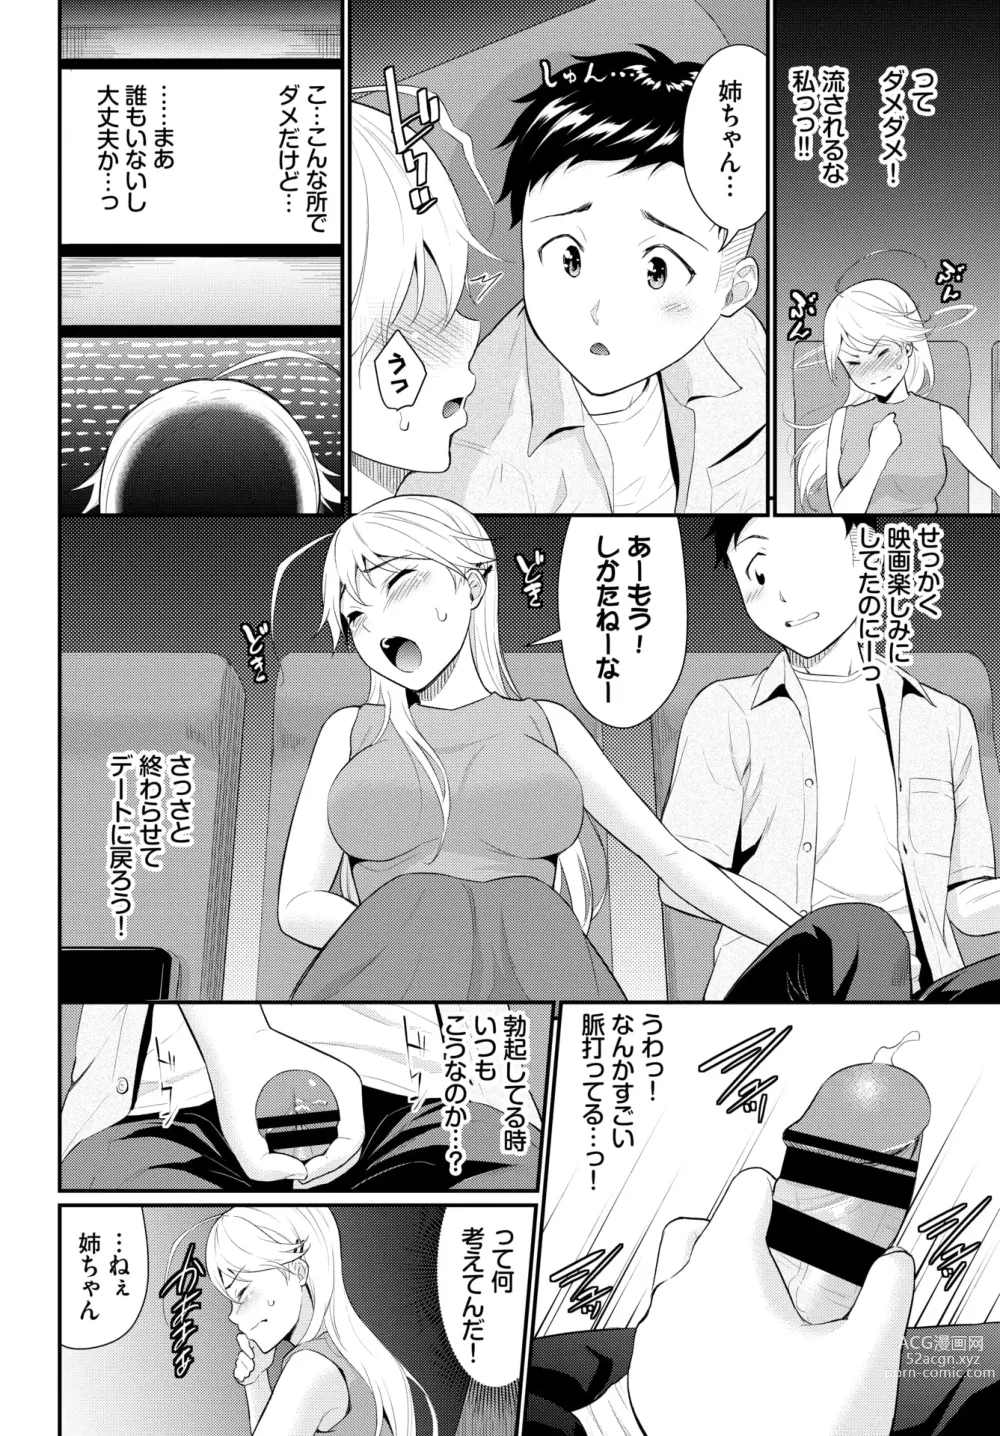 Page 6 of manga Hodad Girl